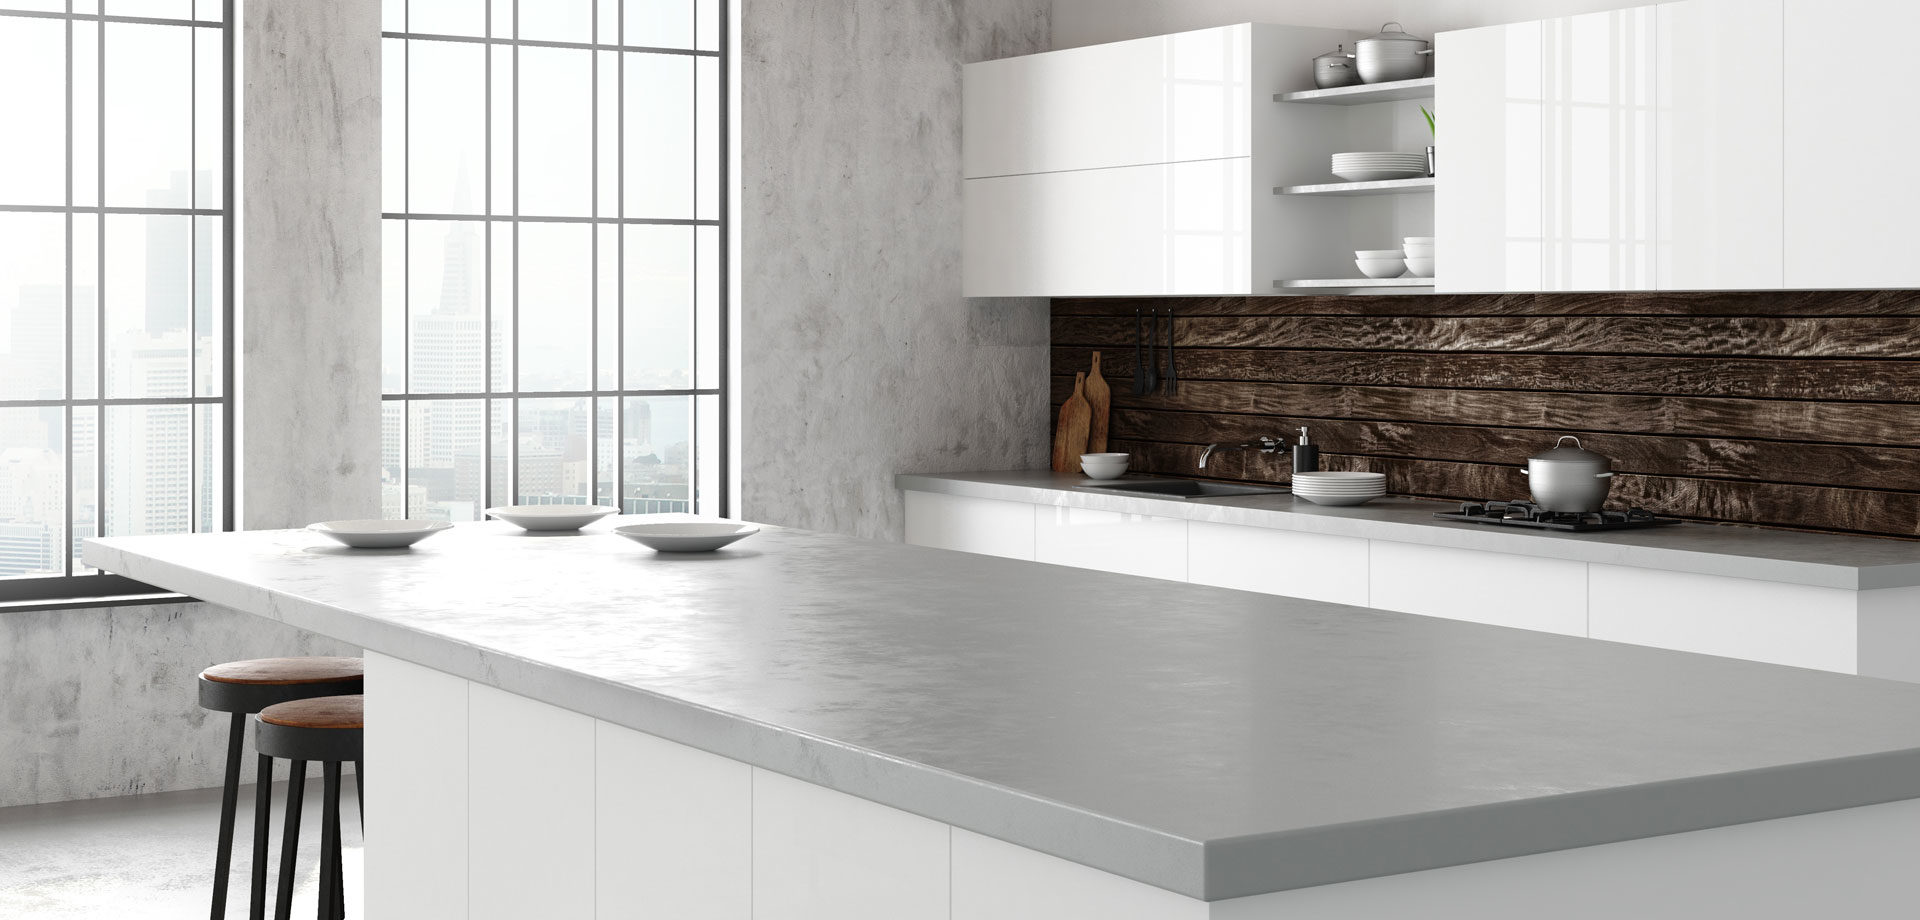 epoxy countertop – G & R Concrete Designs